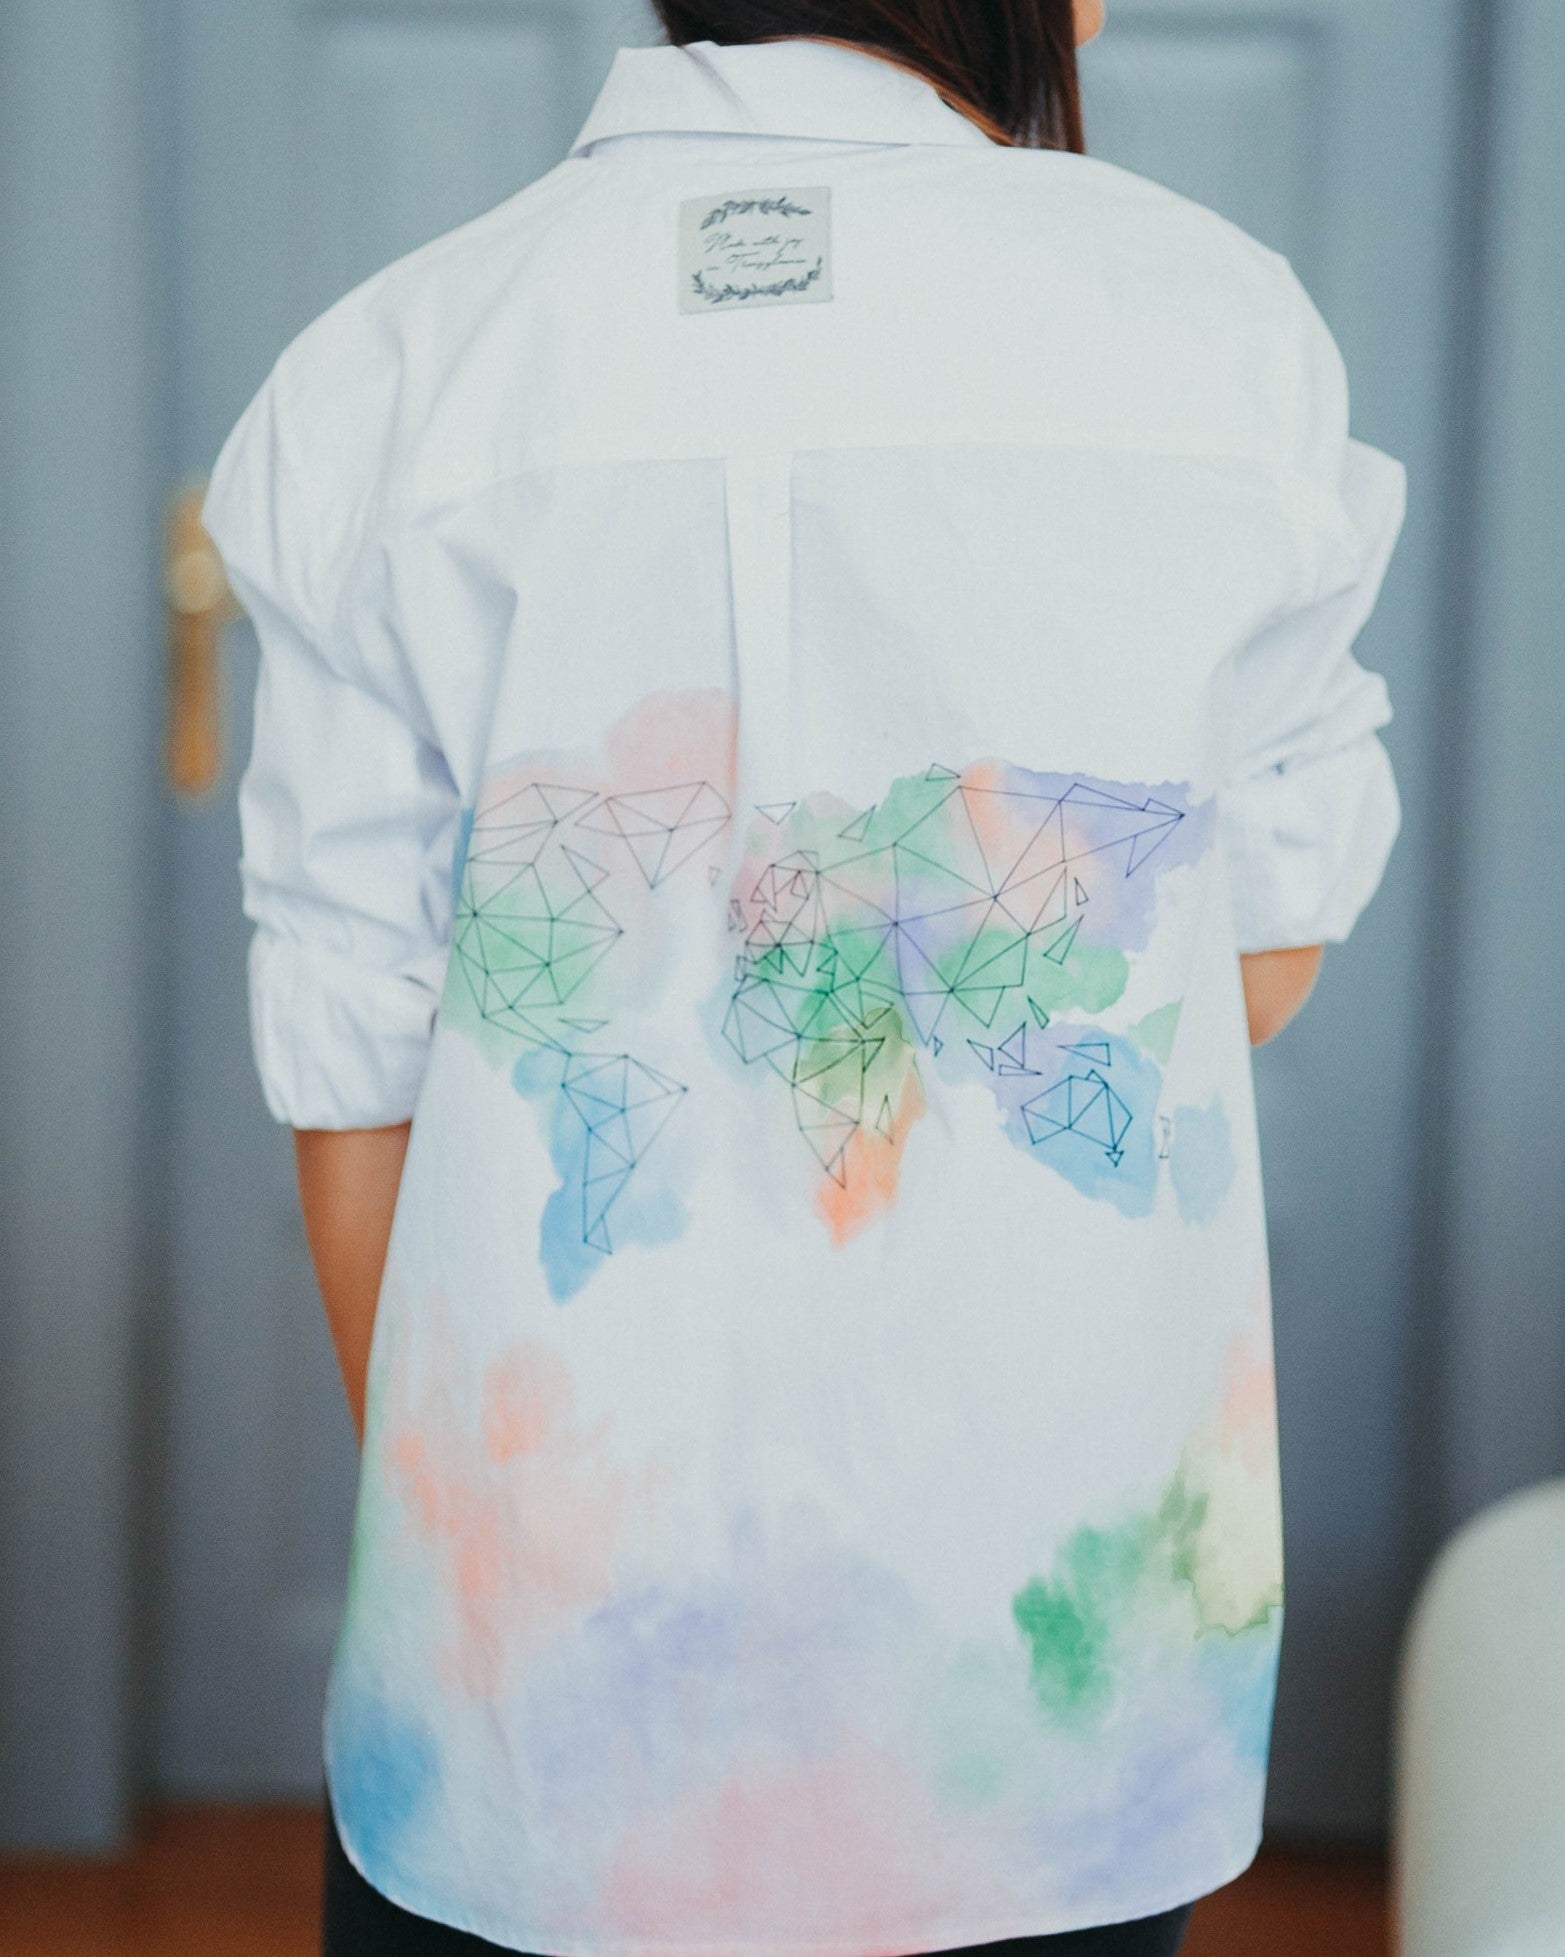 Hand-painted women's shirt "Around the world"